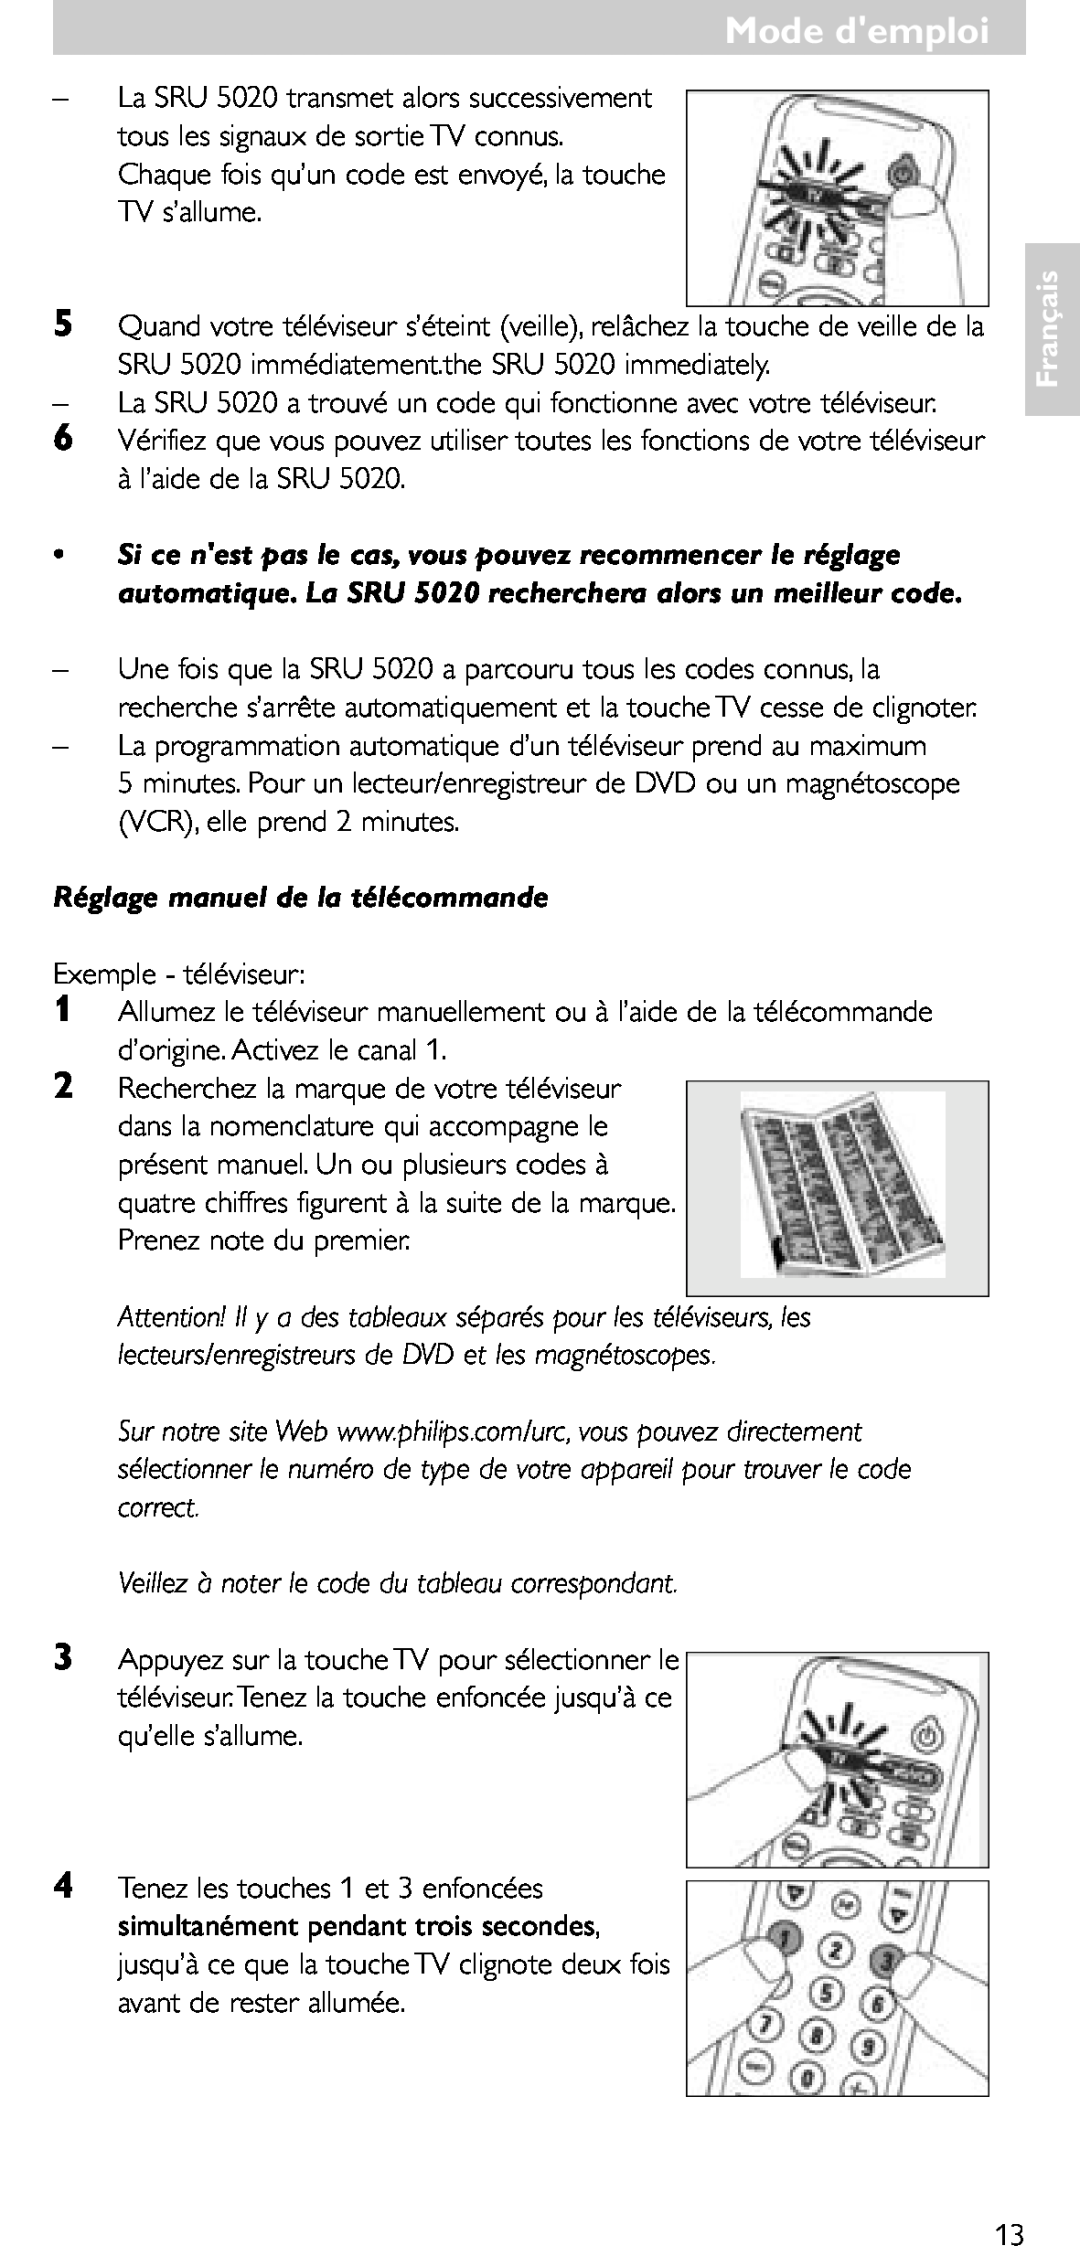 Philips SRU 5020/86 Réglage manuel de la télécommande, Veillez à noter le code du tableau correspondant, Mode demploi 